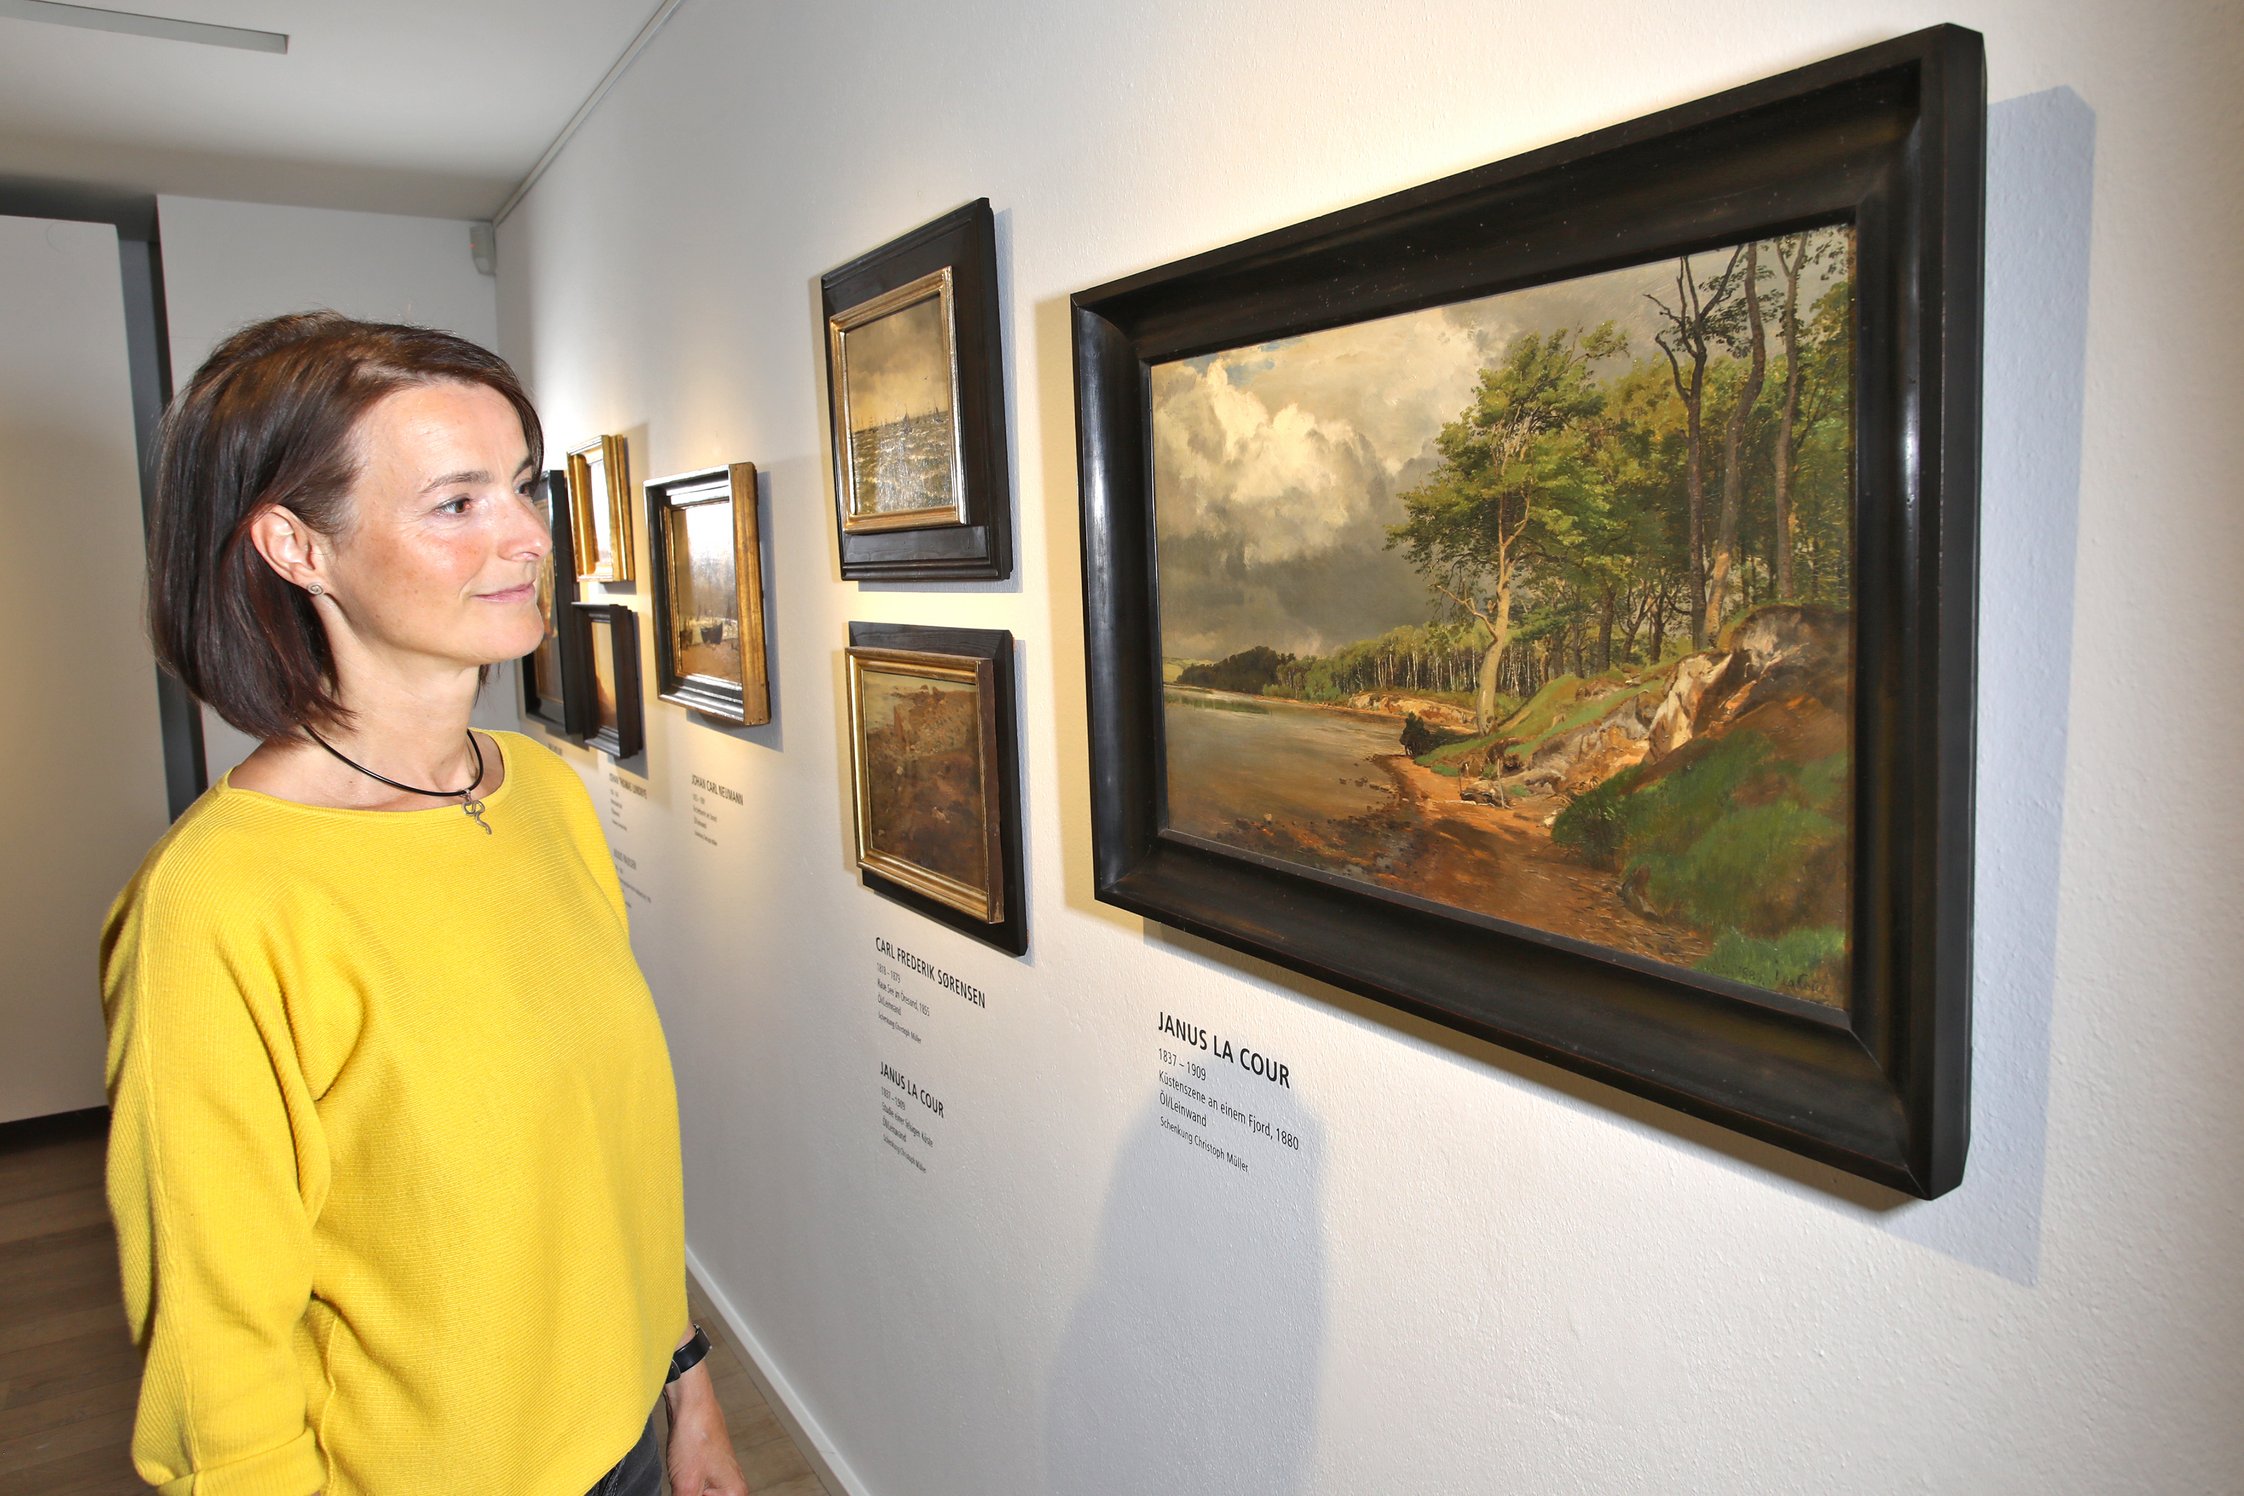 Eine Besucherin betrachtet einige Gemälde dänischer Künstler aus dem 19. Jahrhundert, darunter Janus La Cour.